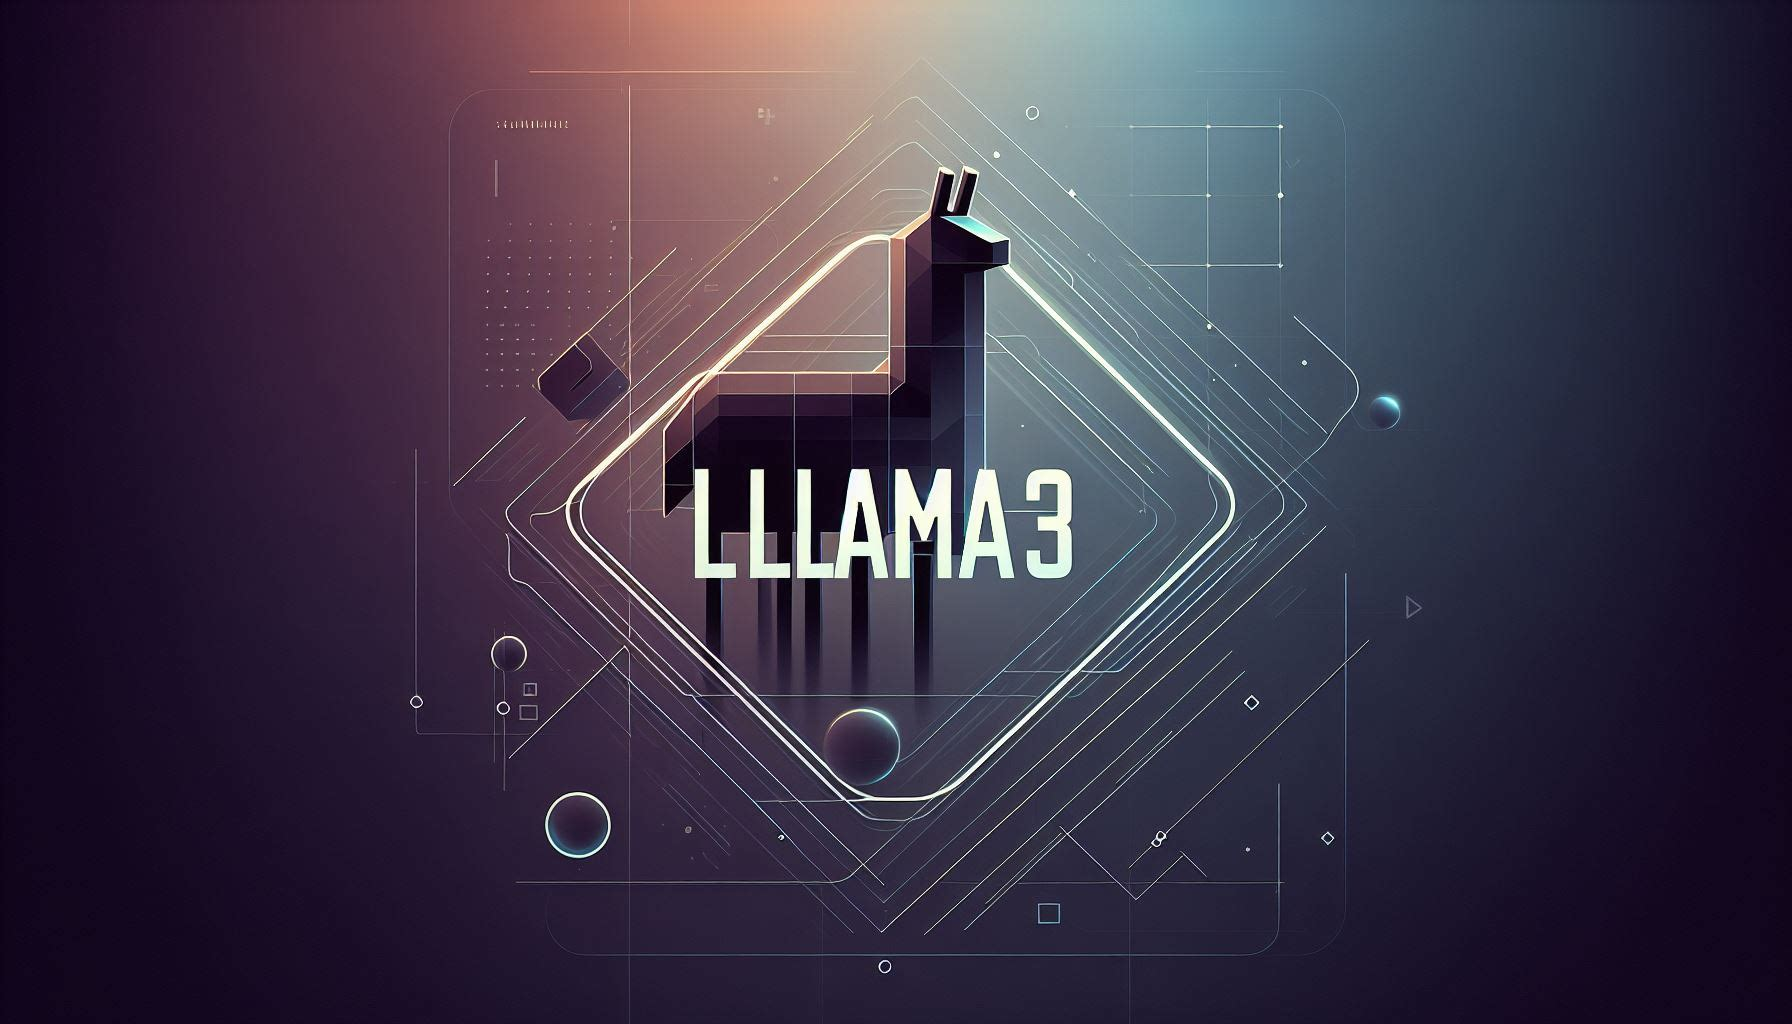 【大语言模型LLM】-Ollama+Llama3 部署你自己的大语言模型